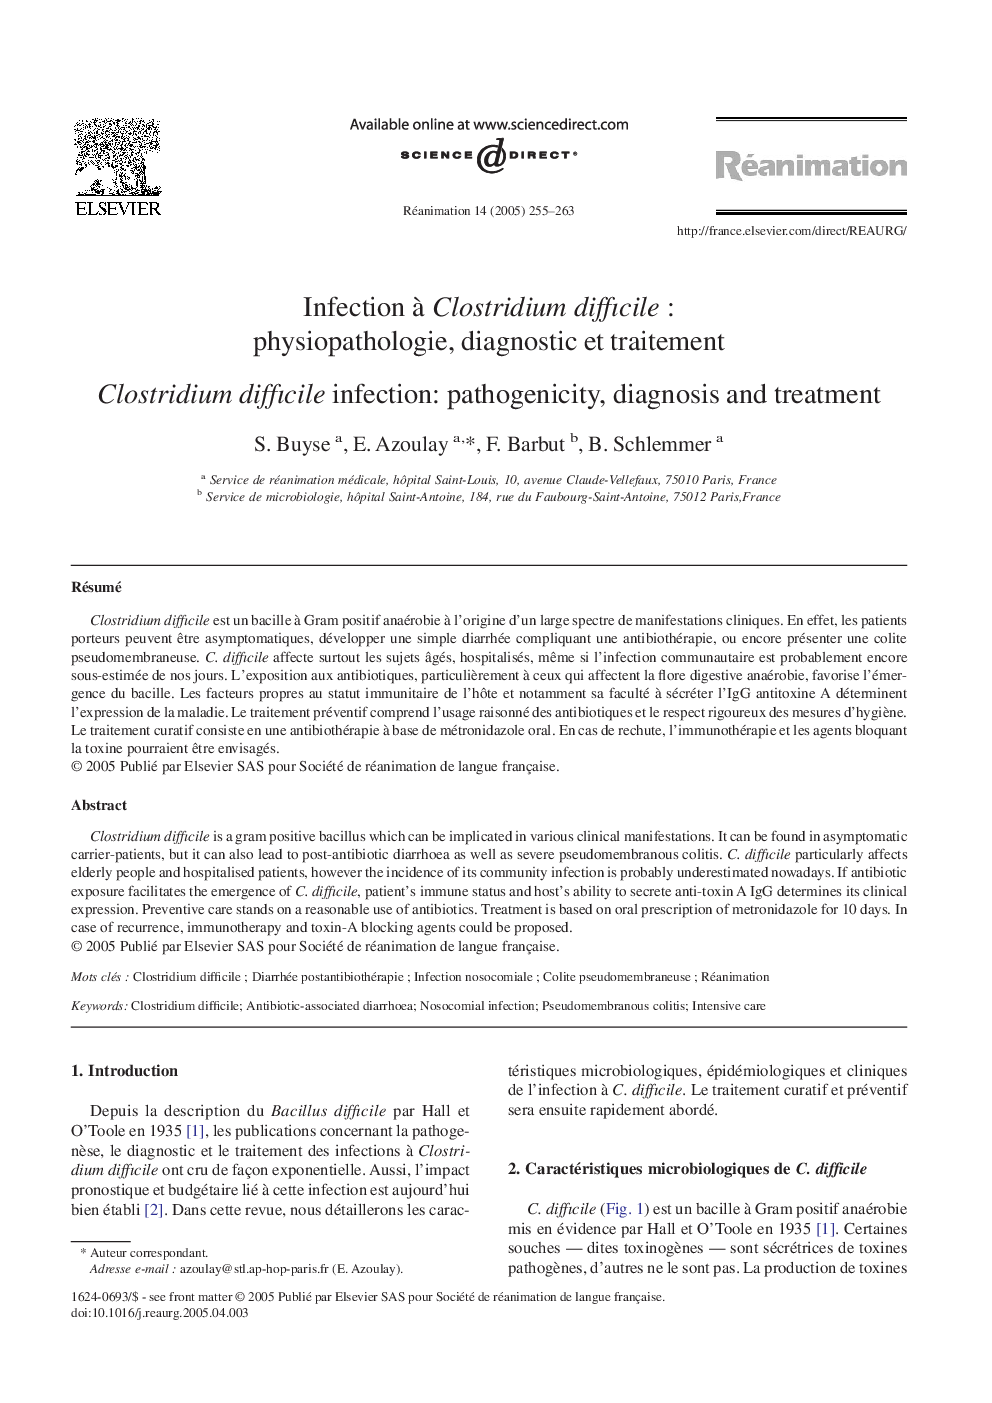 Infection Ã  Clostridium difficileÂ : physiopathologie, diagnostic et traitement